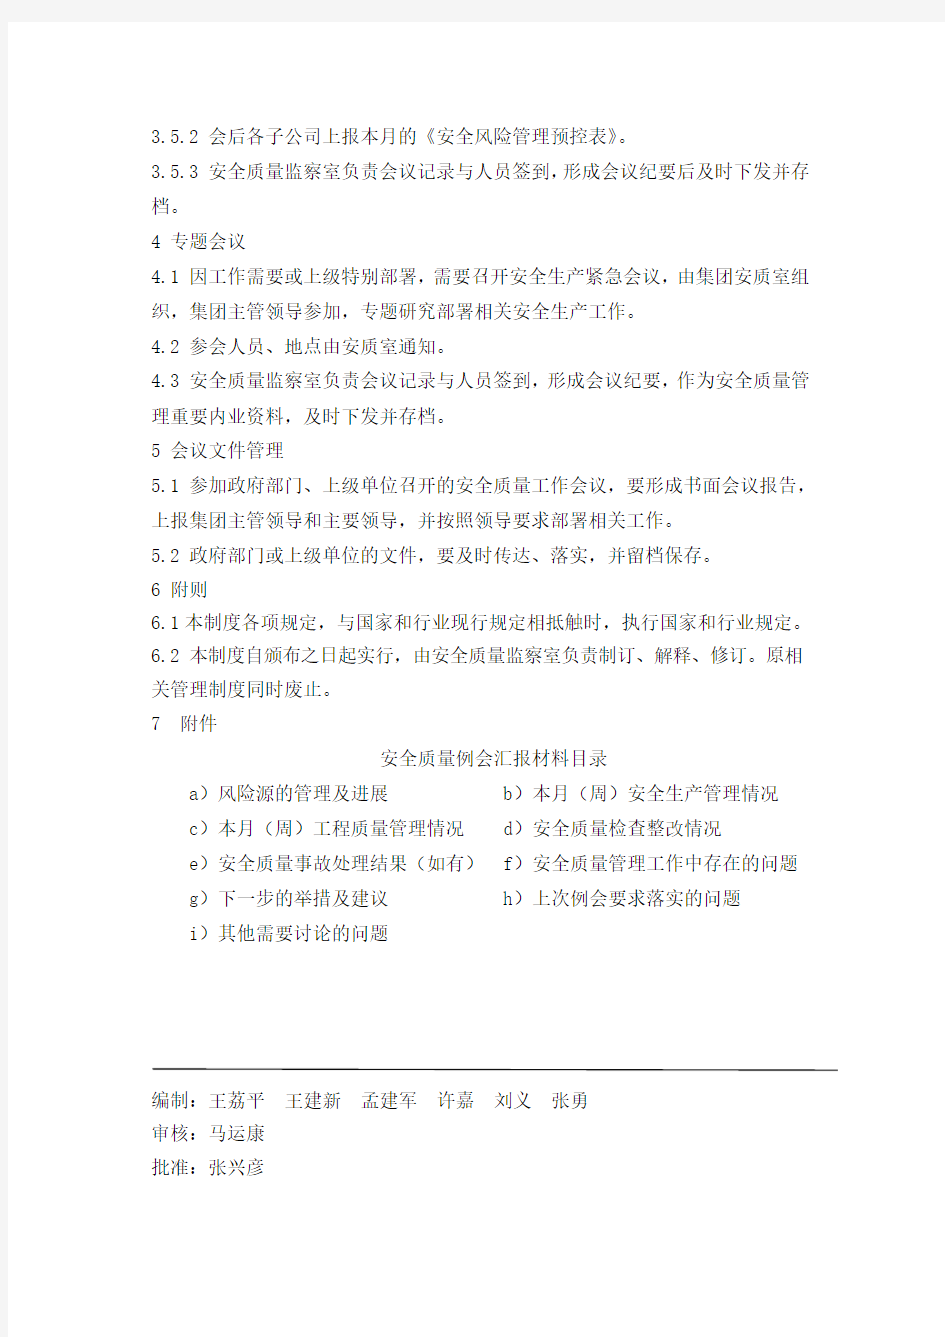 天津地铁集团安全生产会议管理制度(TJDT-ZY-AQ-10)